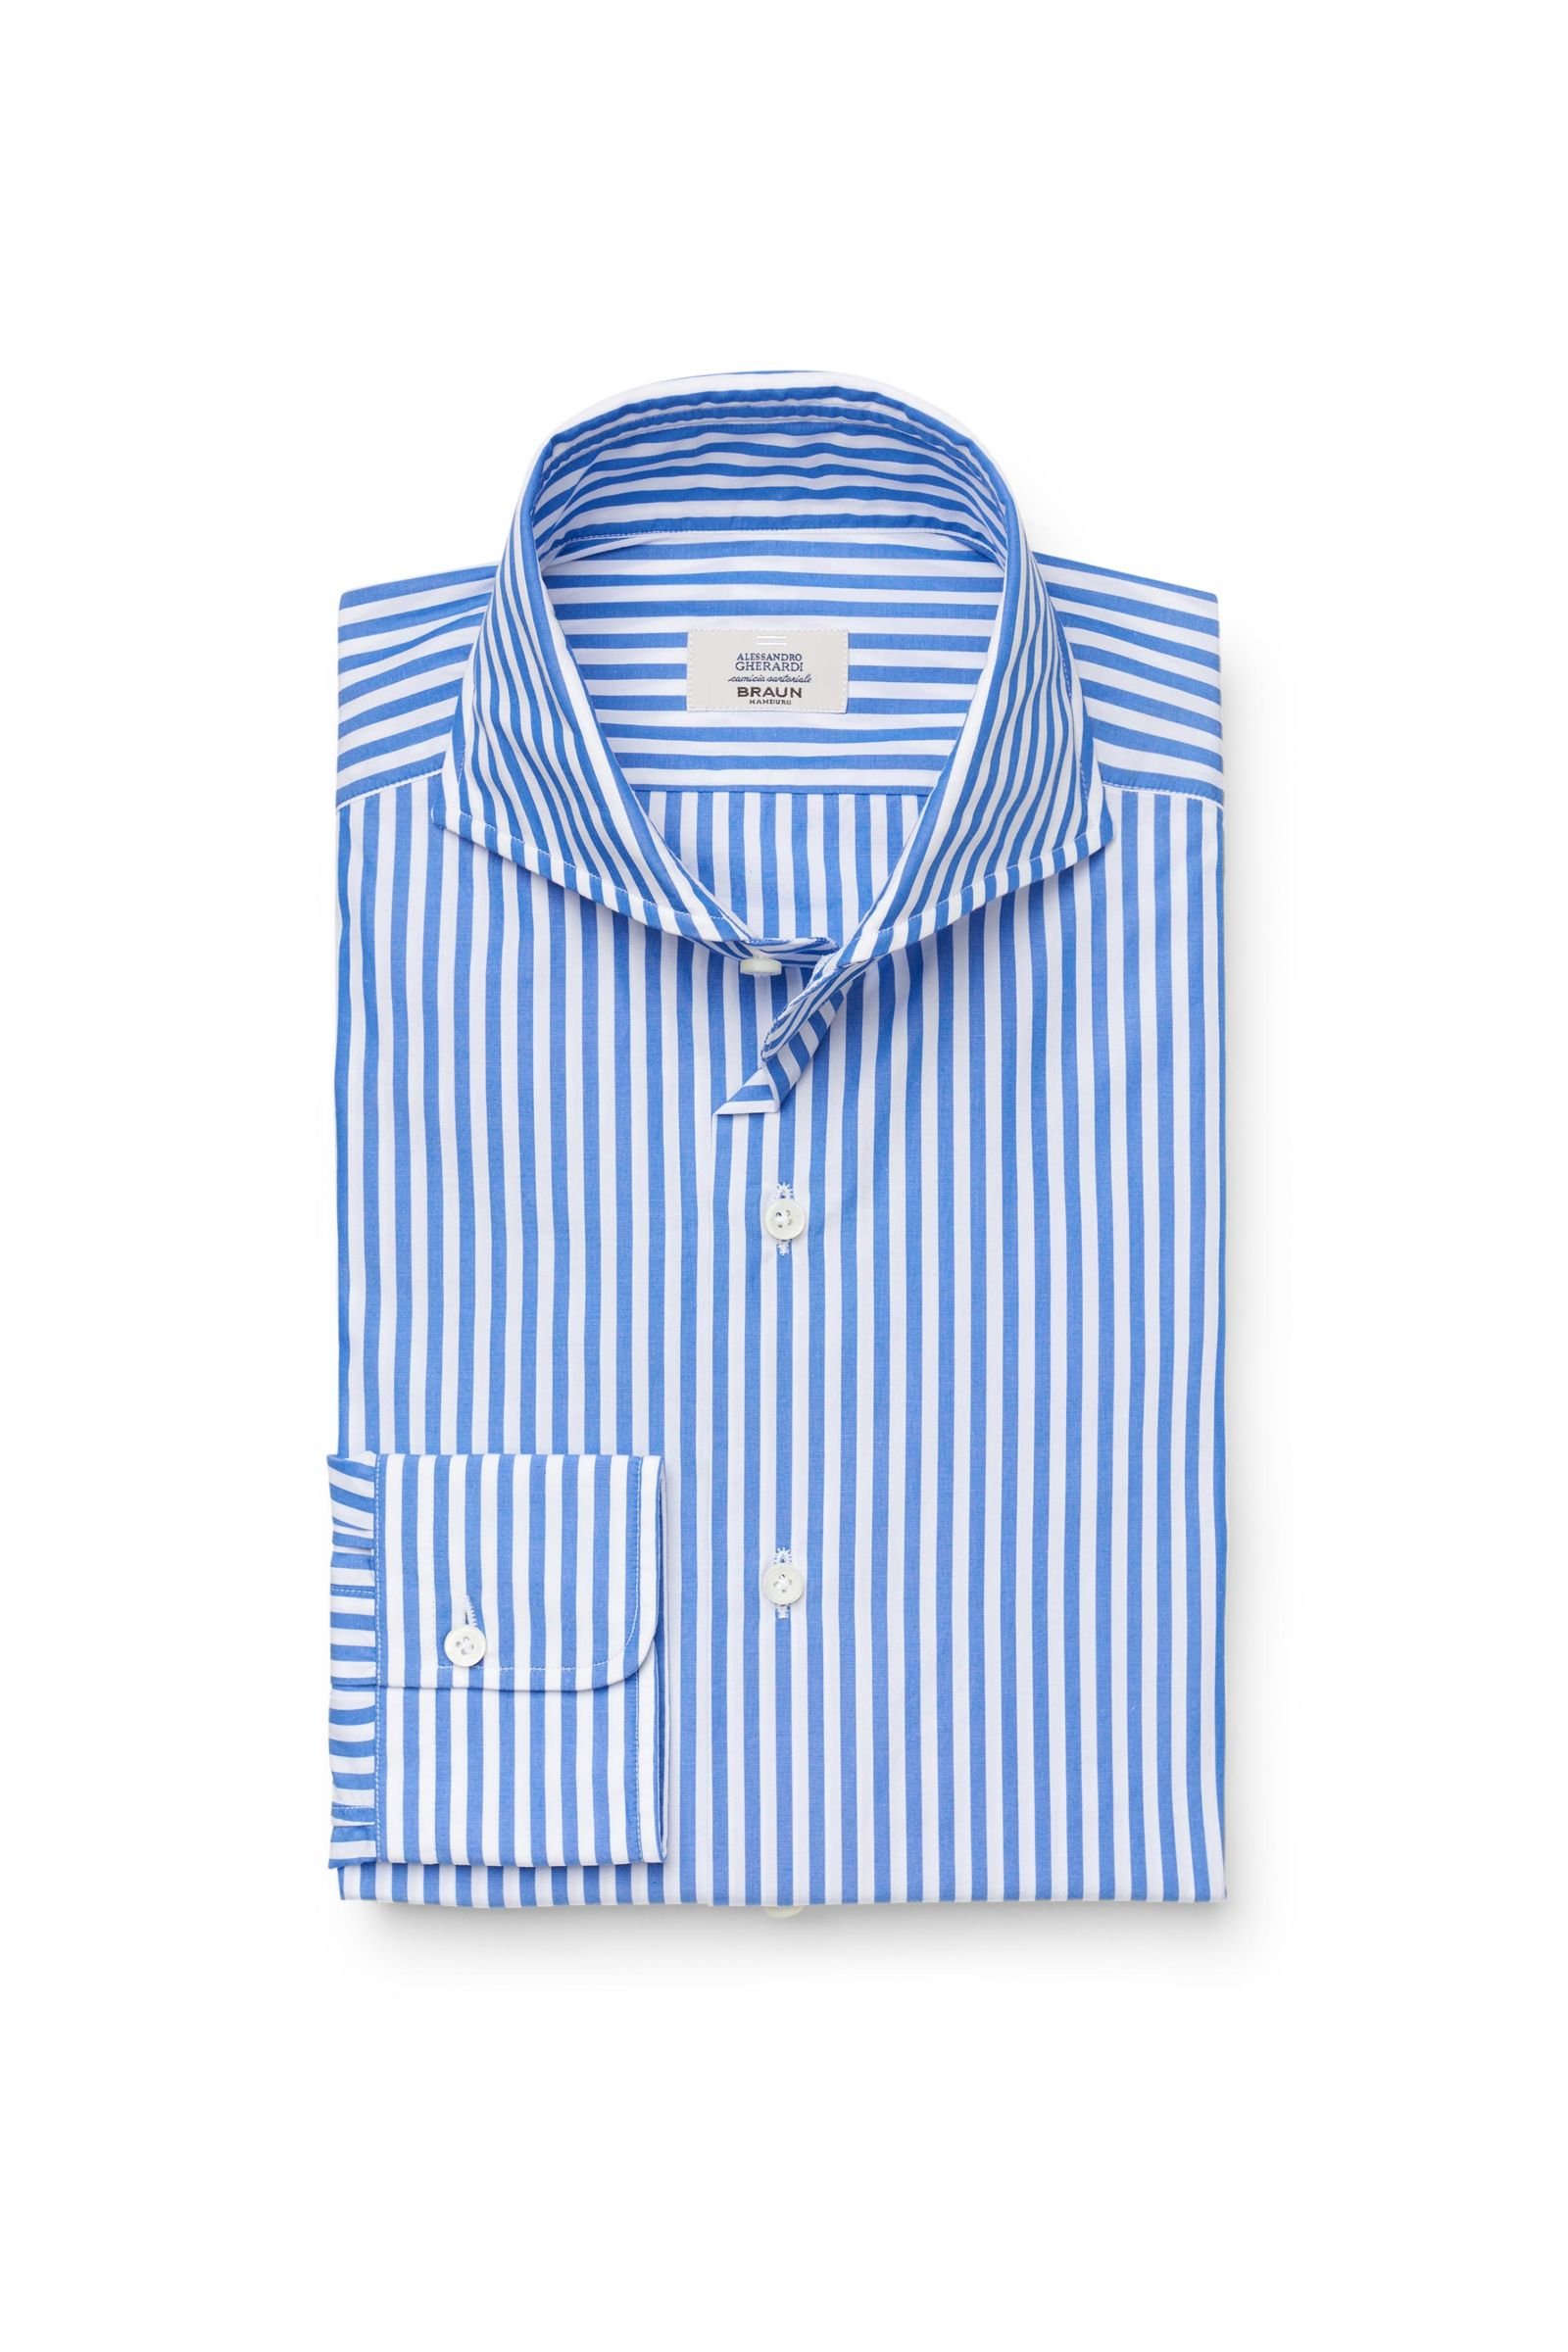 Business shirt shark collar blue striped